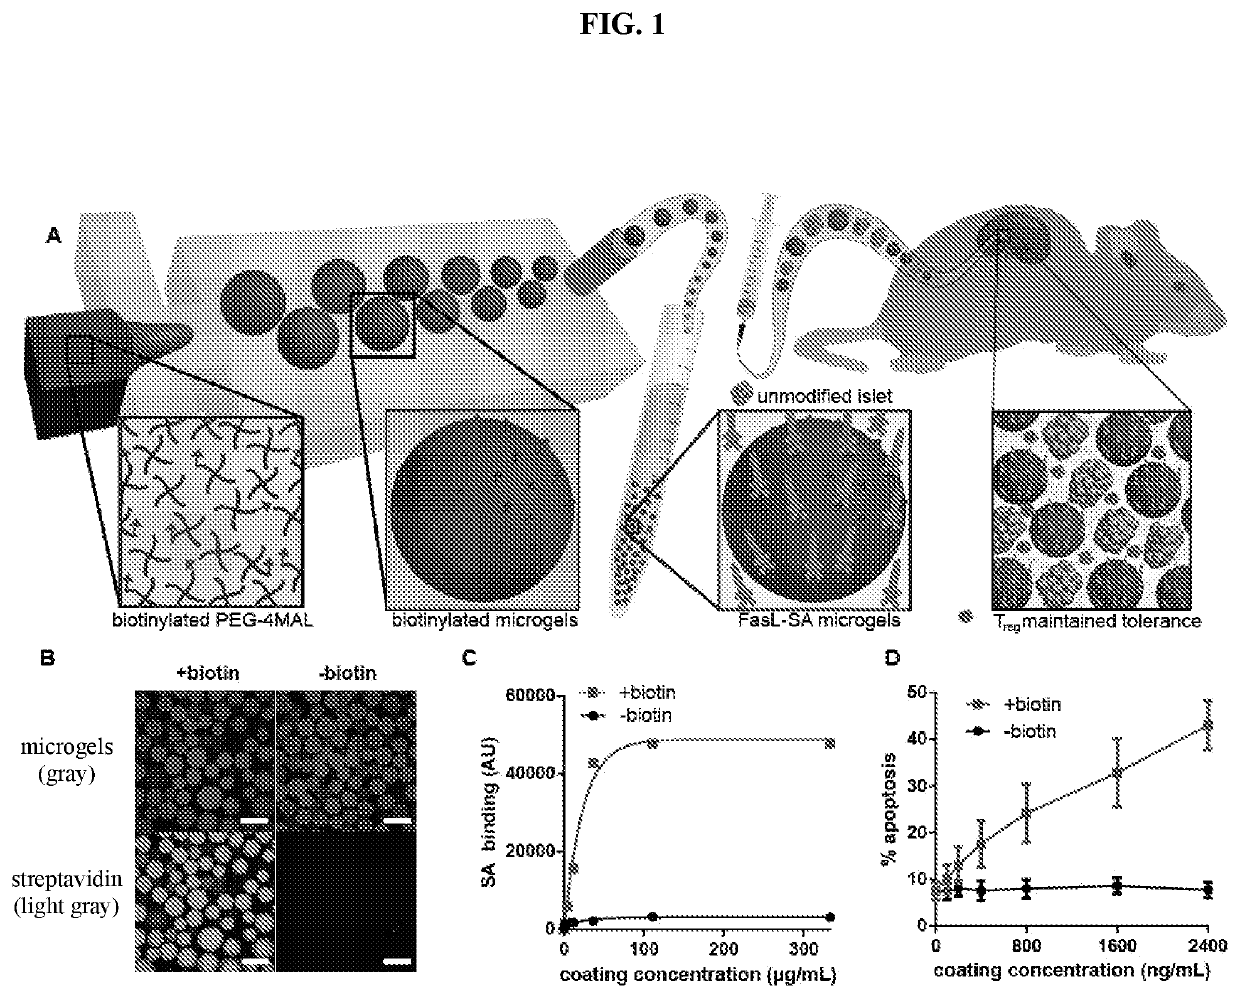 Fasl-engineered biomaterials with immunomodulatory function